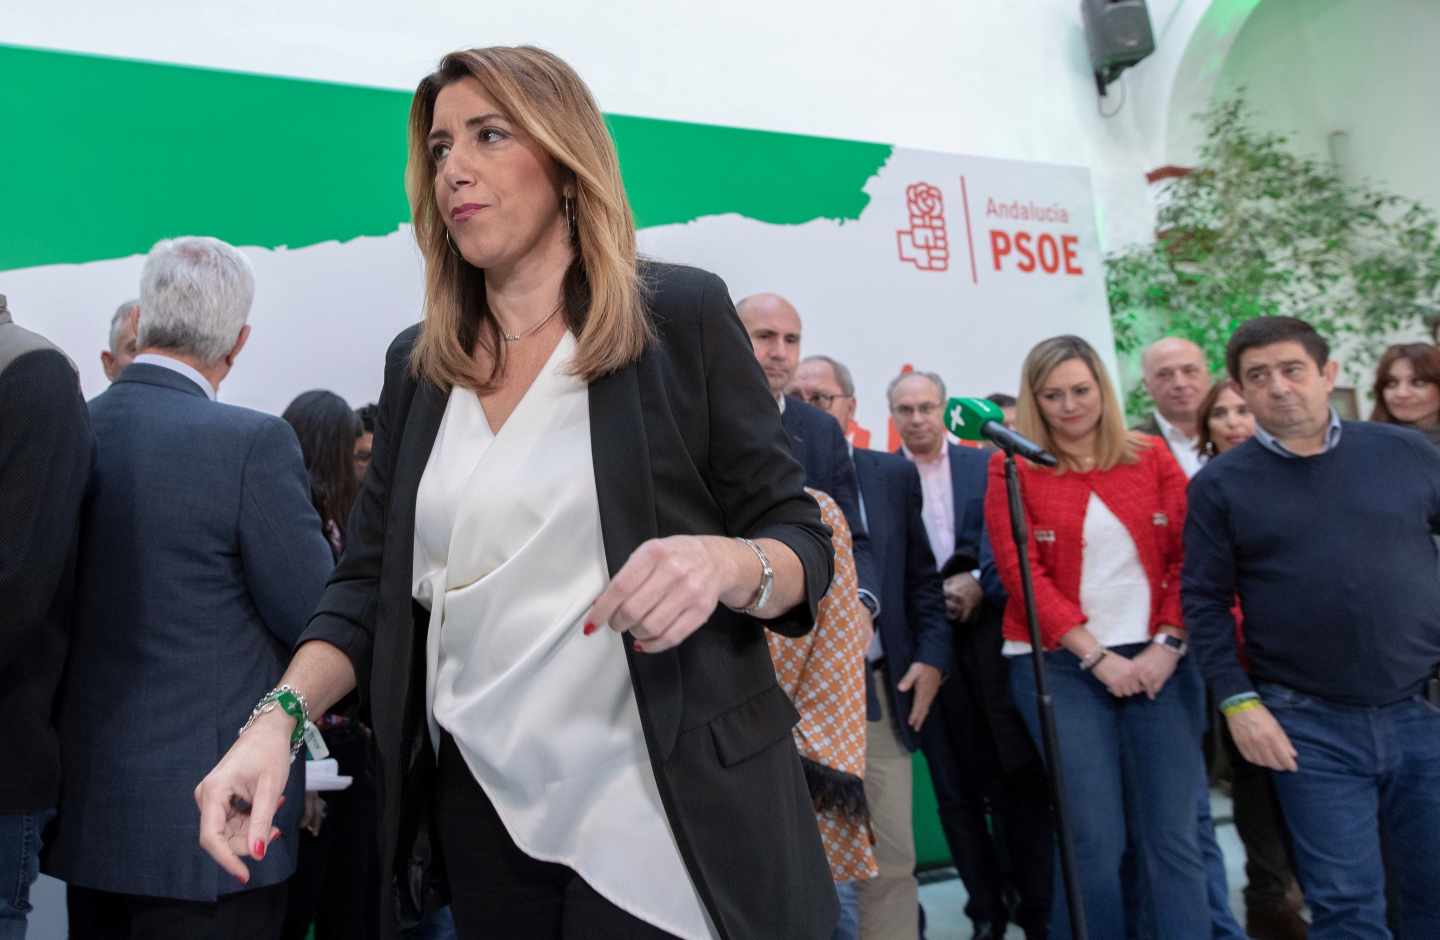 Susana Díaz se atrinchera en Andalucía y asume ya que será líder de la oposición